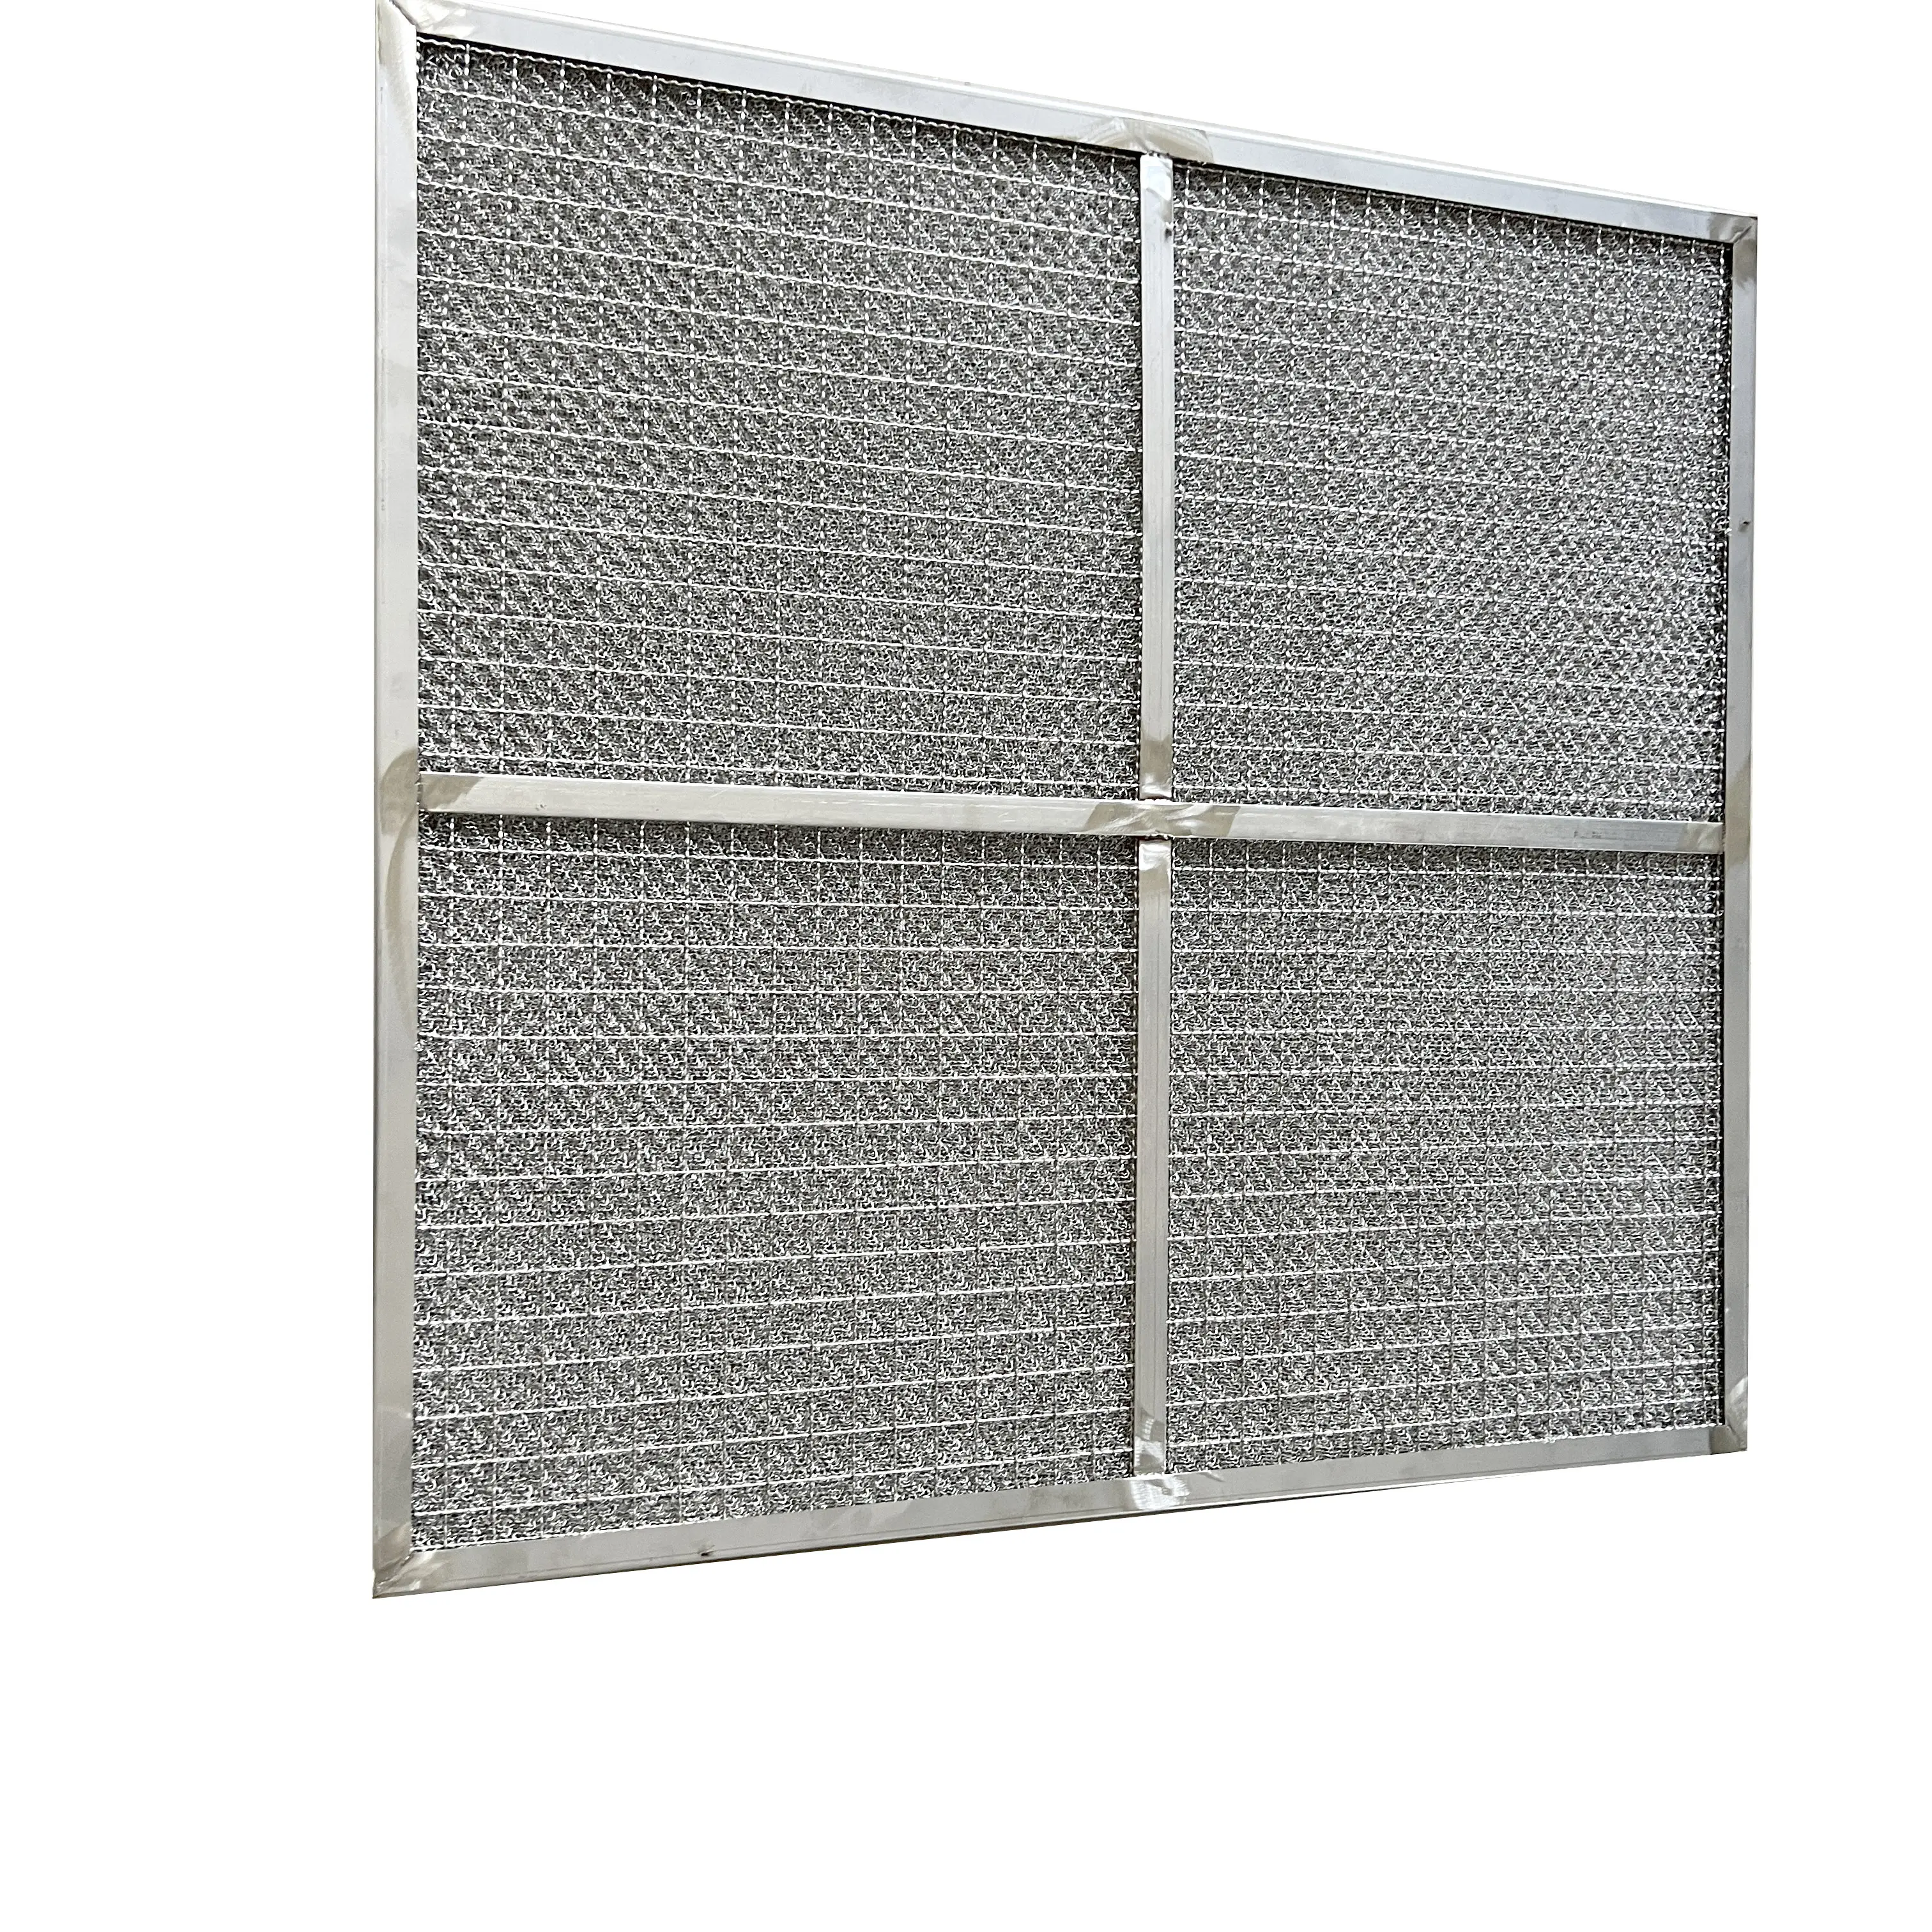 Metal çerçeve yağ dumanı kaldırma hava filtresi yüksek sıcaklık arıtma filtresi